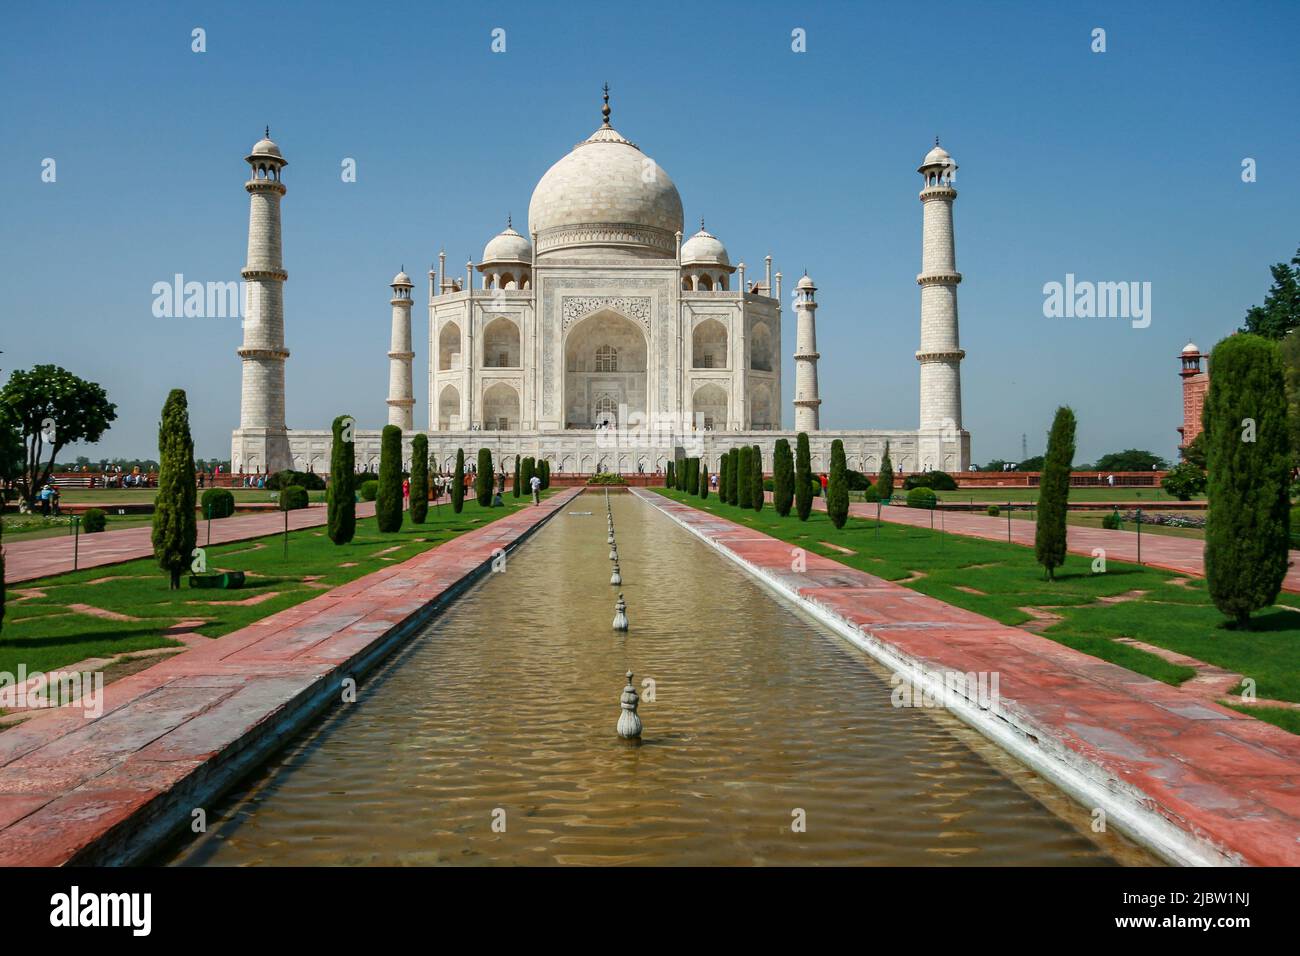 Le Taj Mahal Front View, Agra, Uttar Pradesh, Inde. Patrimoine mondial de l'UNESCO. Sept merveilles du monde Taj Mahal, une merveille intemporelle. Banque D'Images